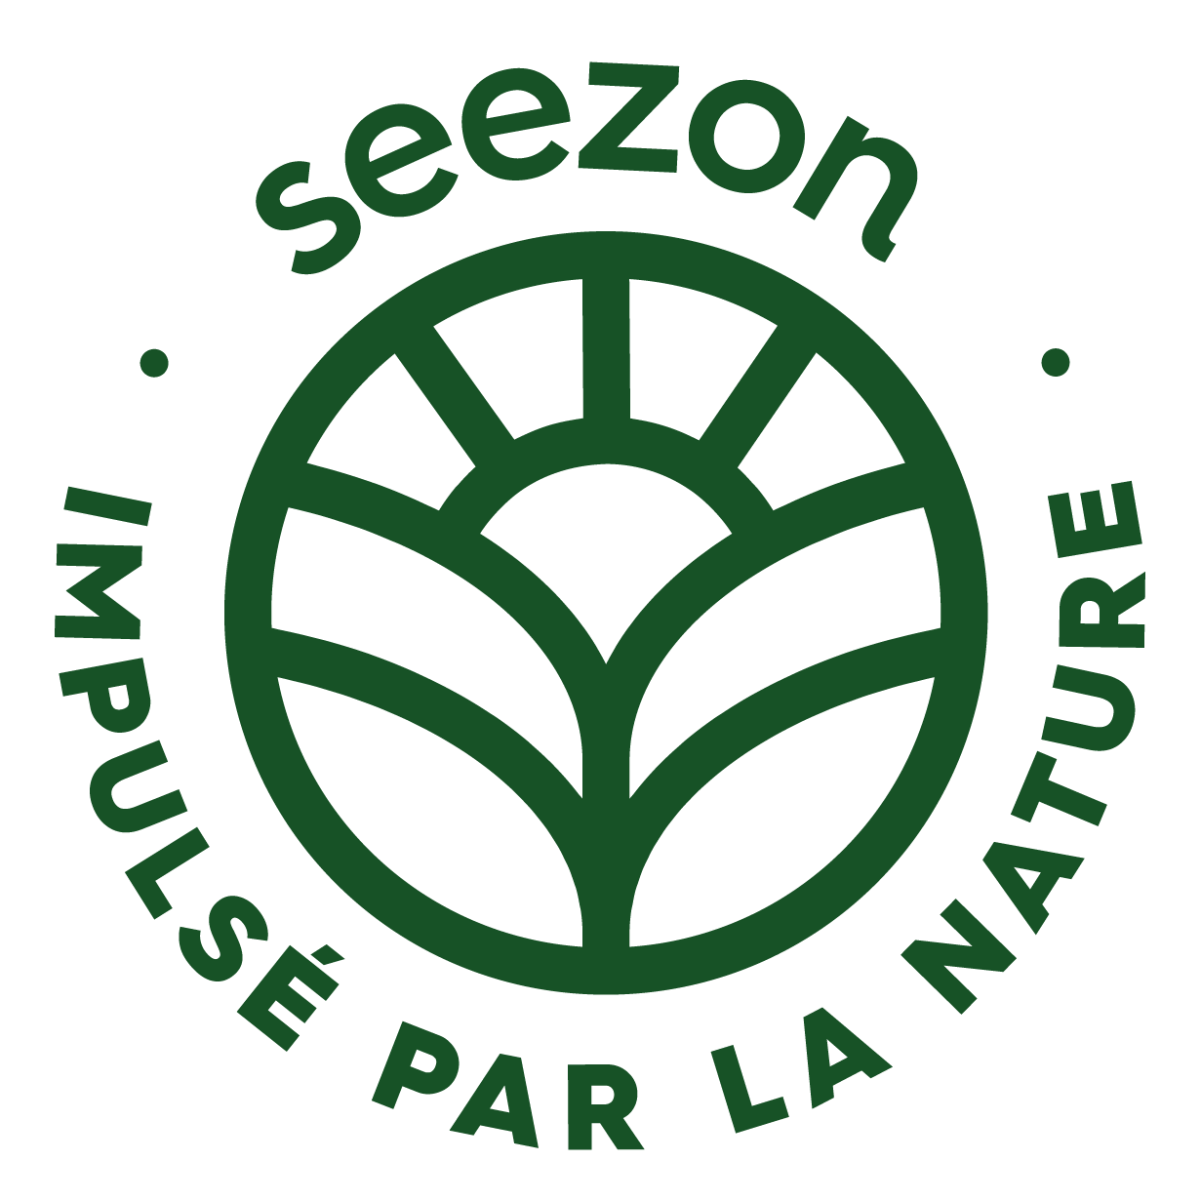 SBM Life Science lance son site web grand public « seezon.co » pour aider et conseiller les jardiniers amateurs